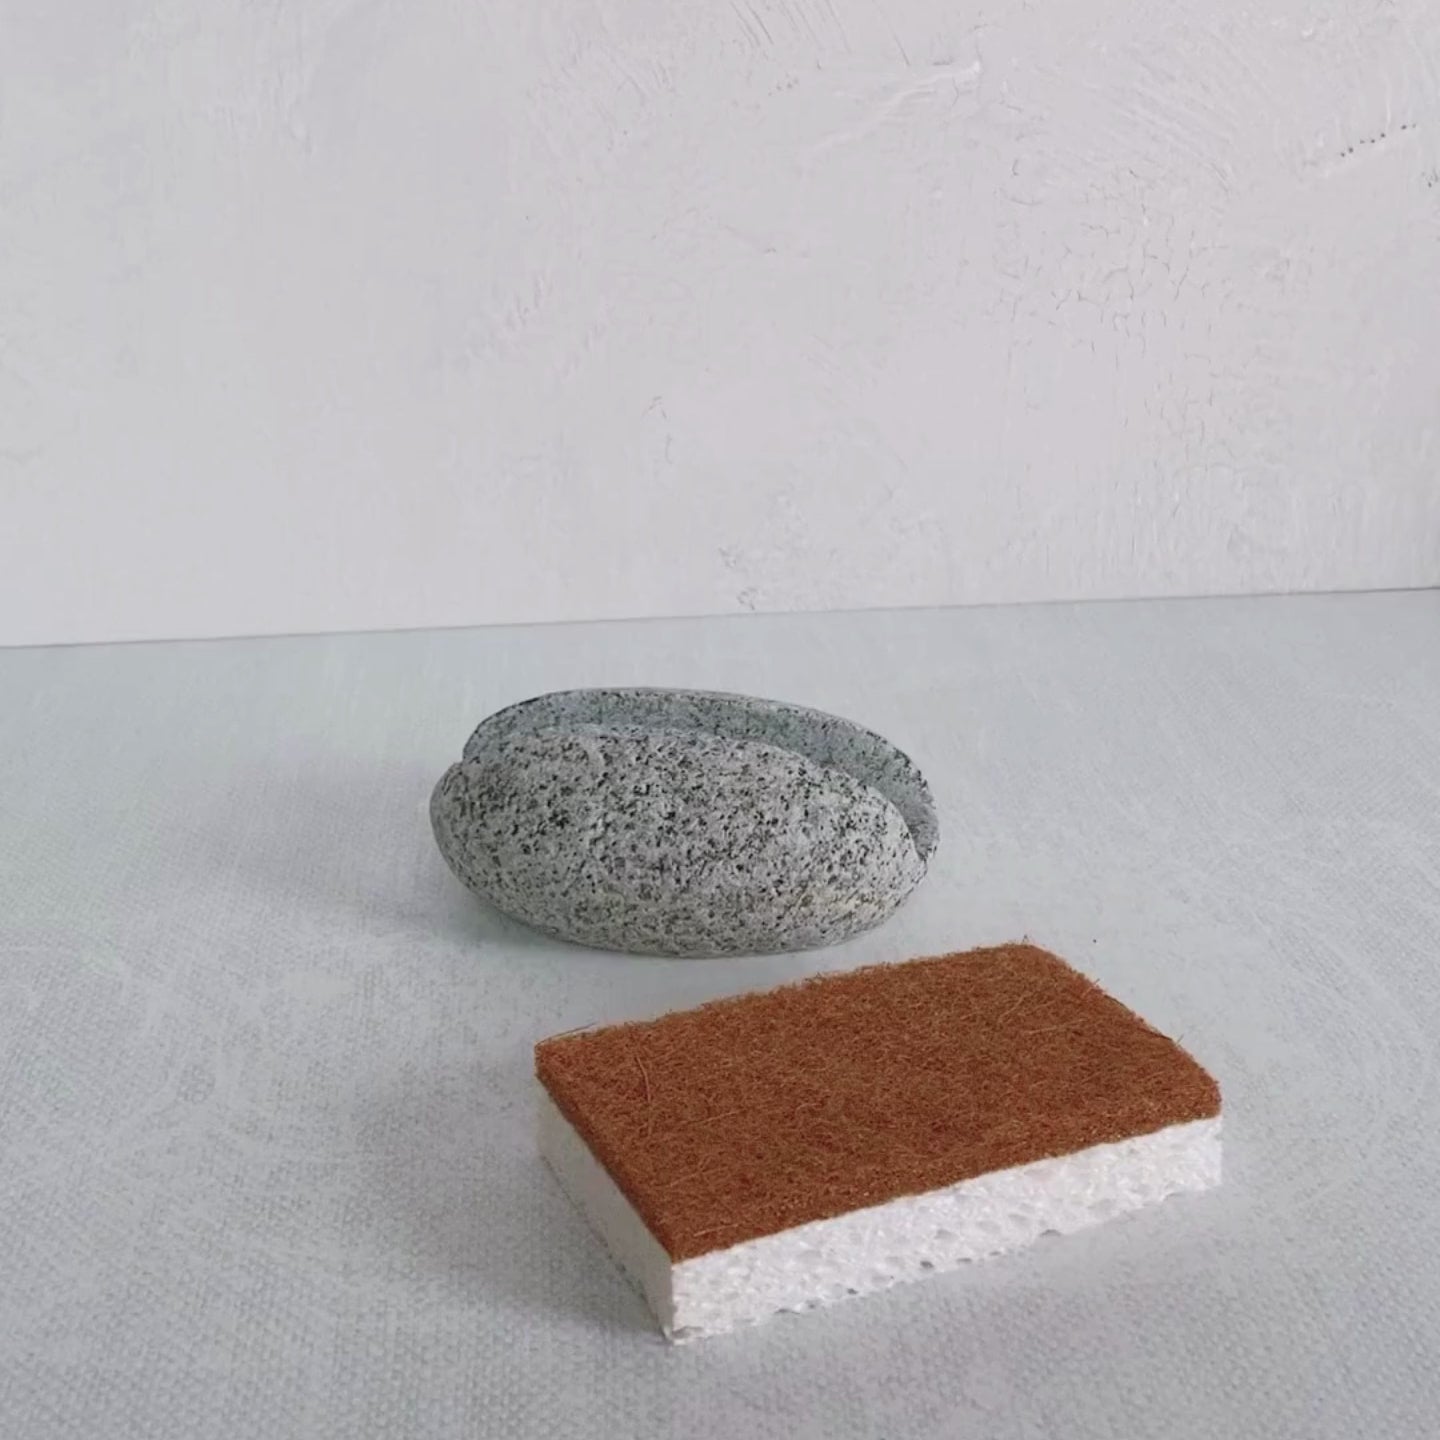 Stone Sponge & Brush Holder — Window Panes MDI